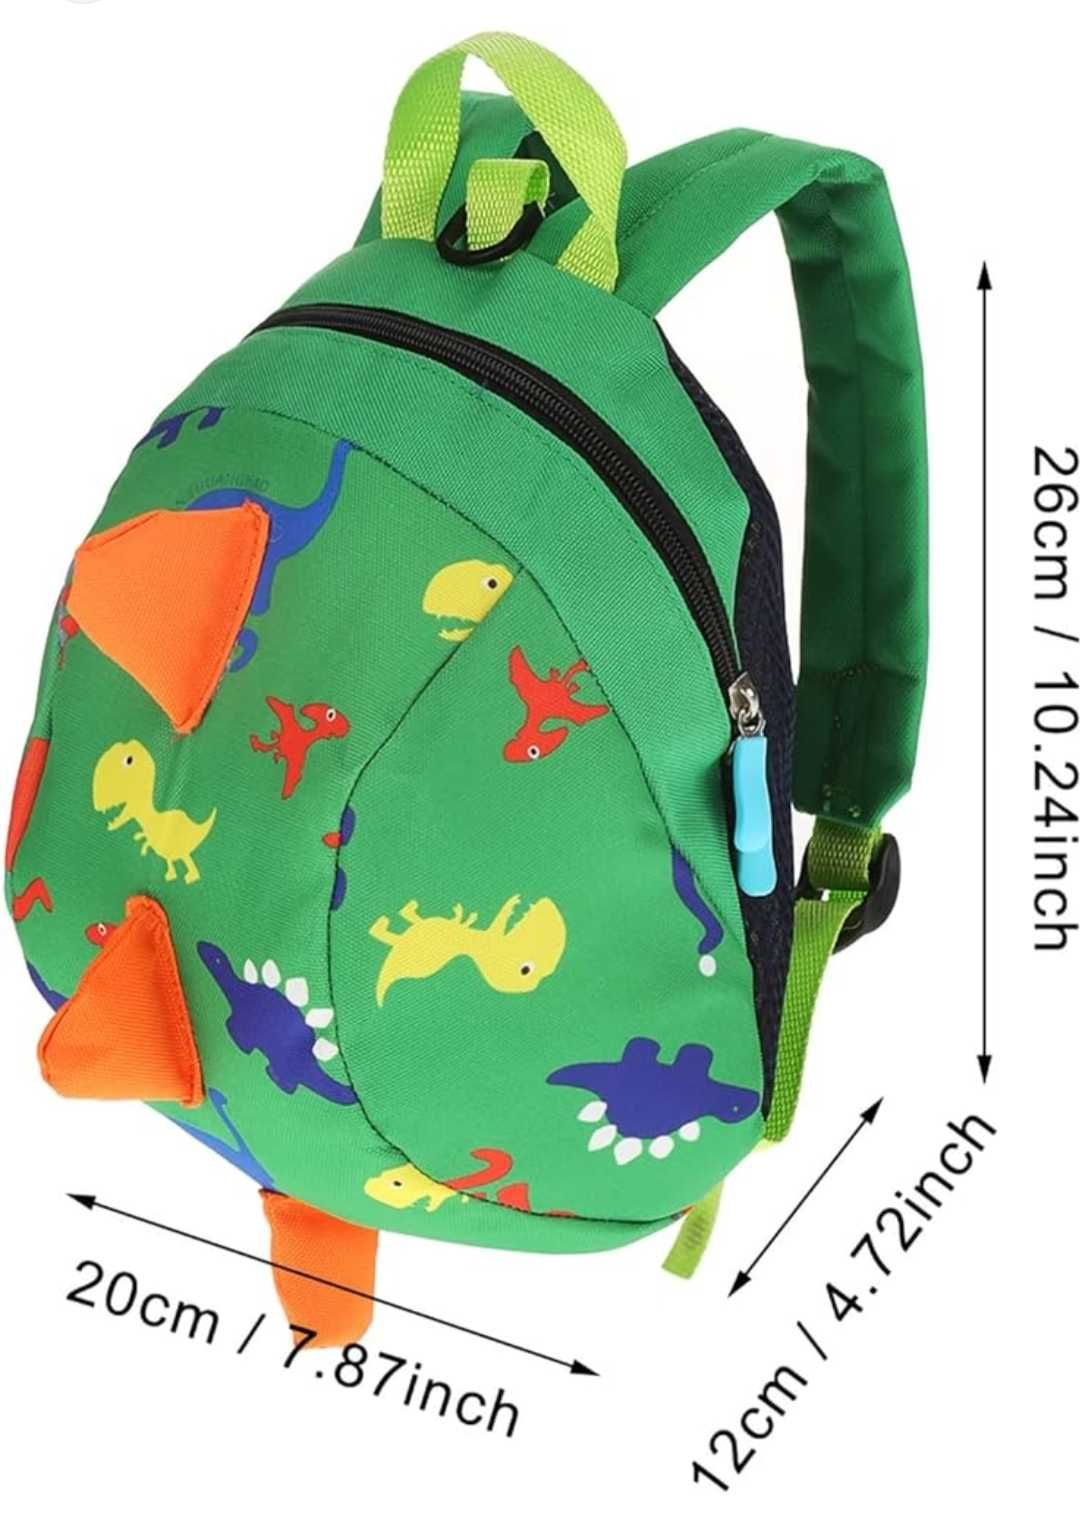 Plecak z opaską na nadgarstek , szelki bezpieczeństwa dla dziecka